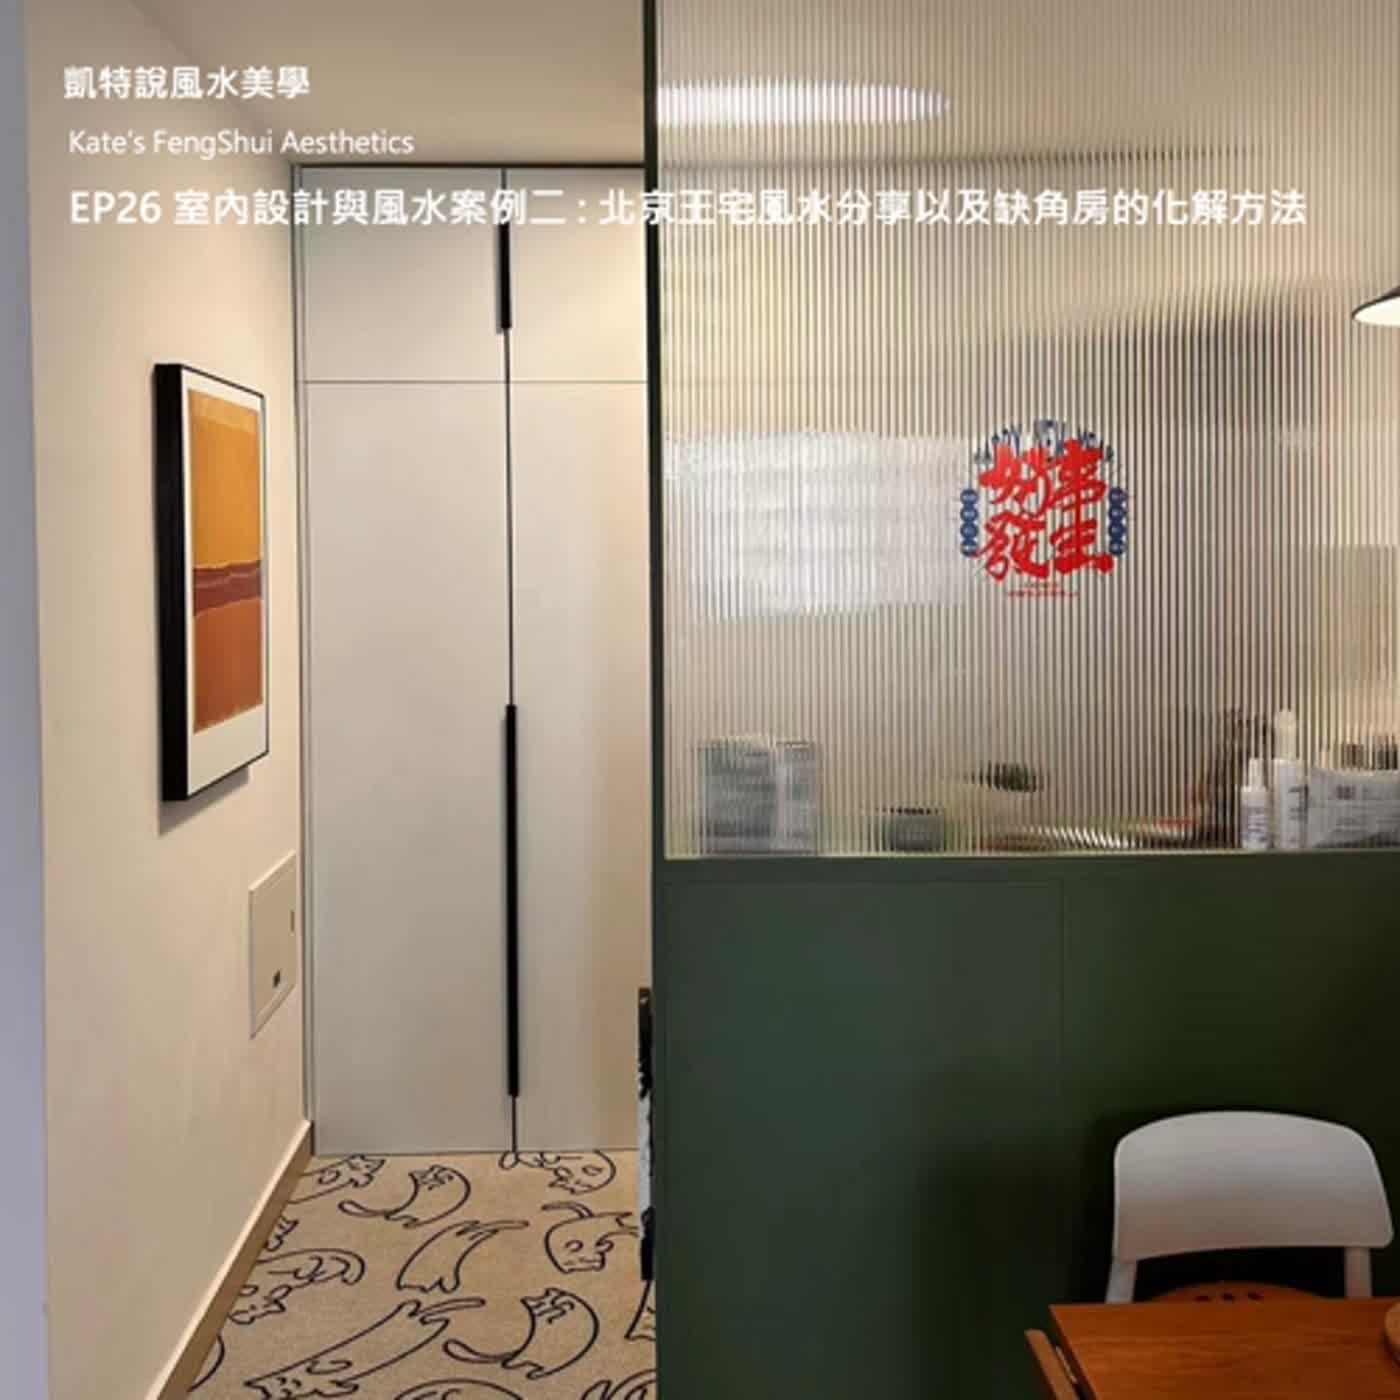 EP26 室內設計與風水案例二 : 北京王宅風水分享以及缺角房的化解方法